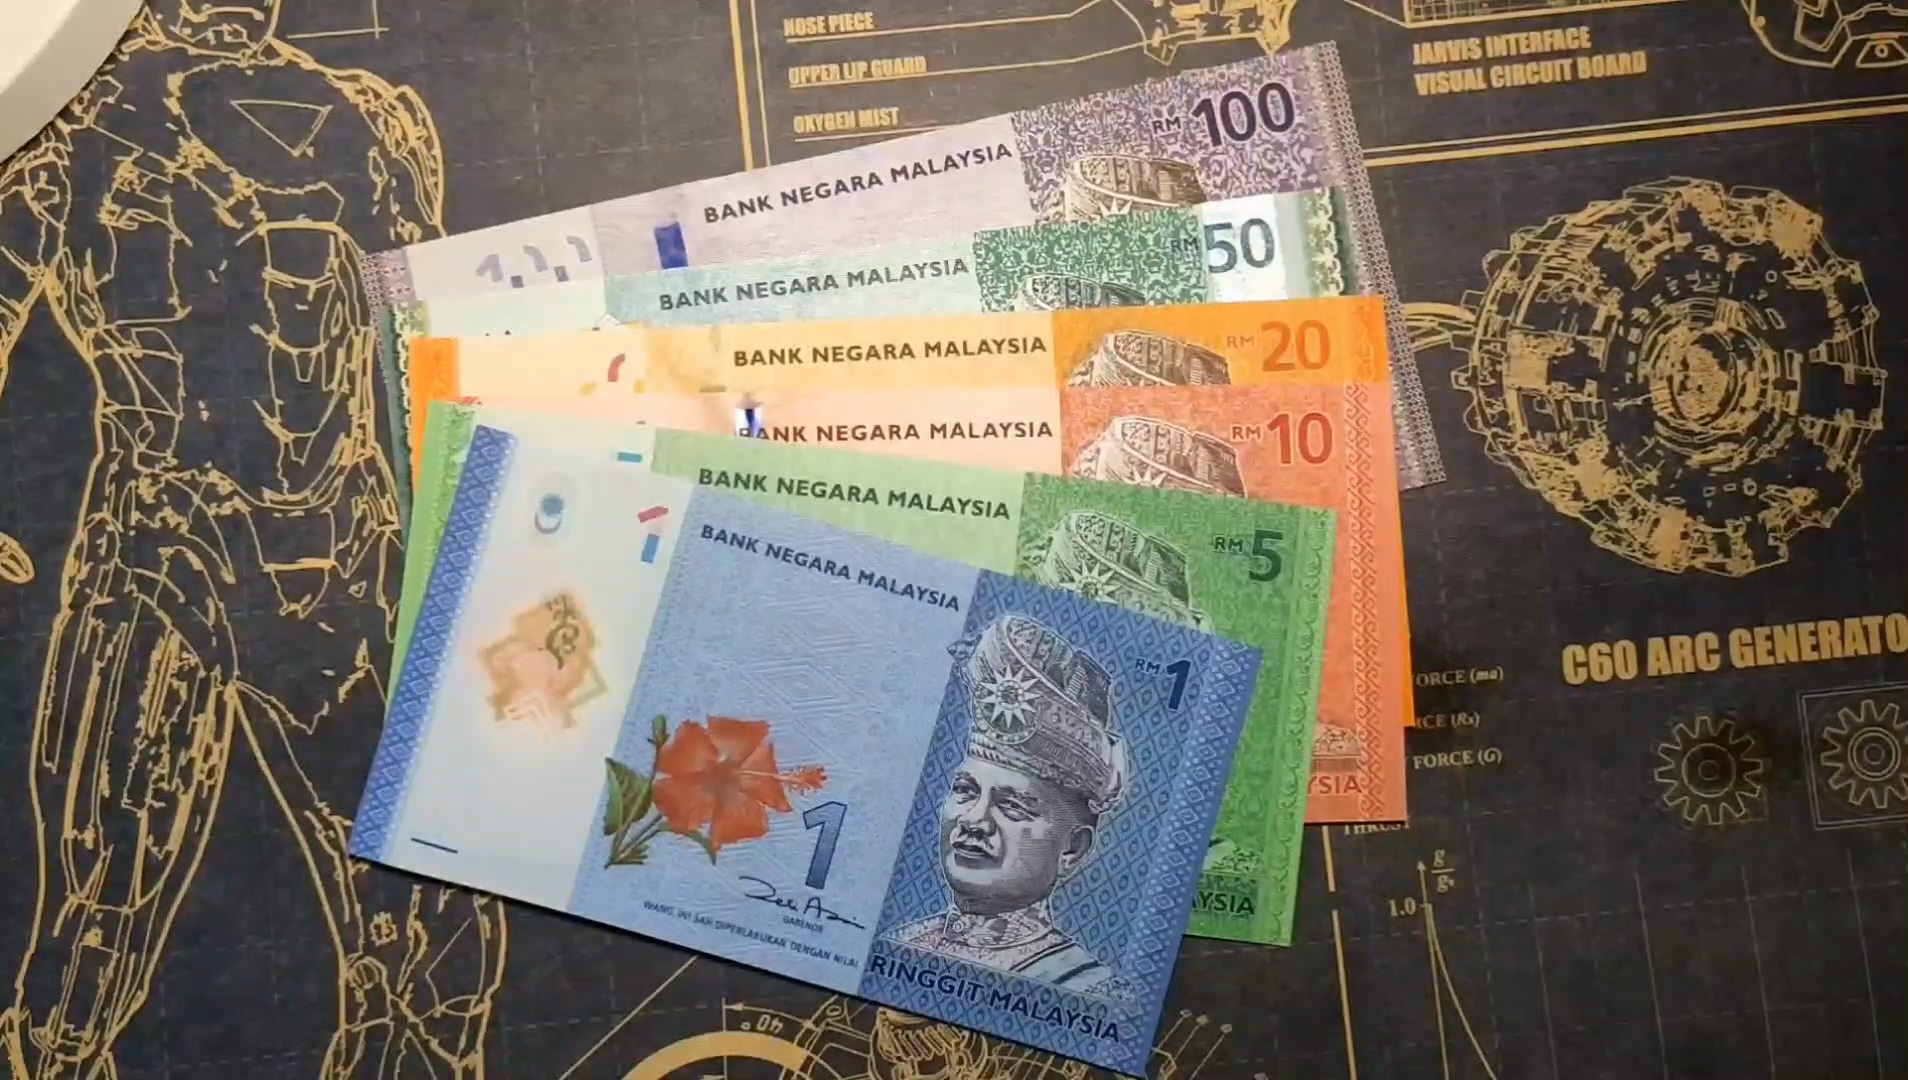 马来西亚纸币2张_货币外国币_成汉华章【7788收藏__收藏热线】